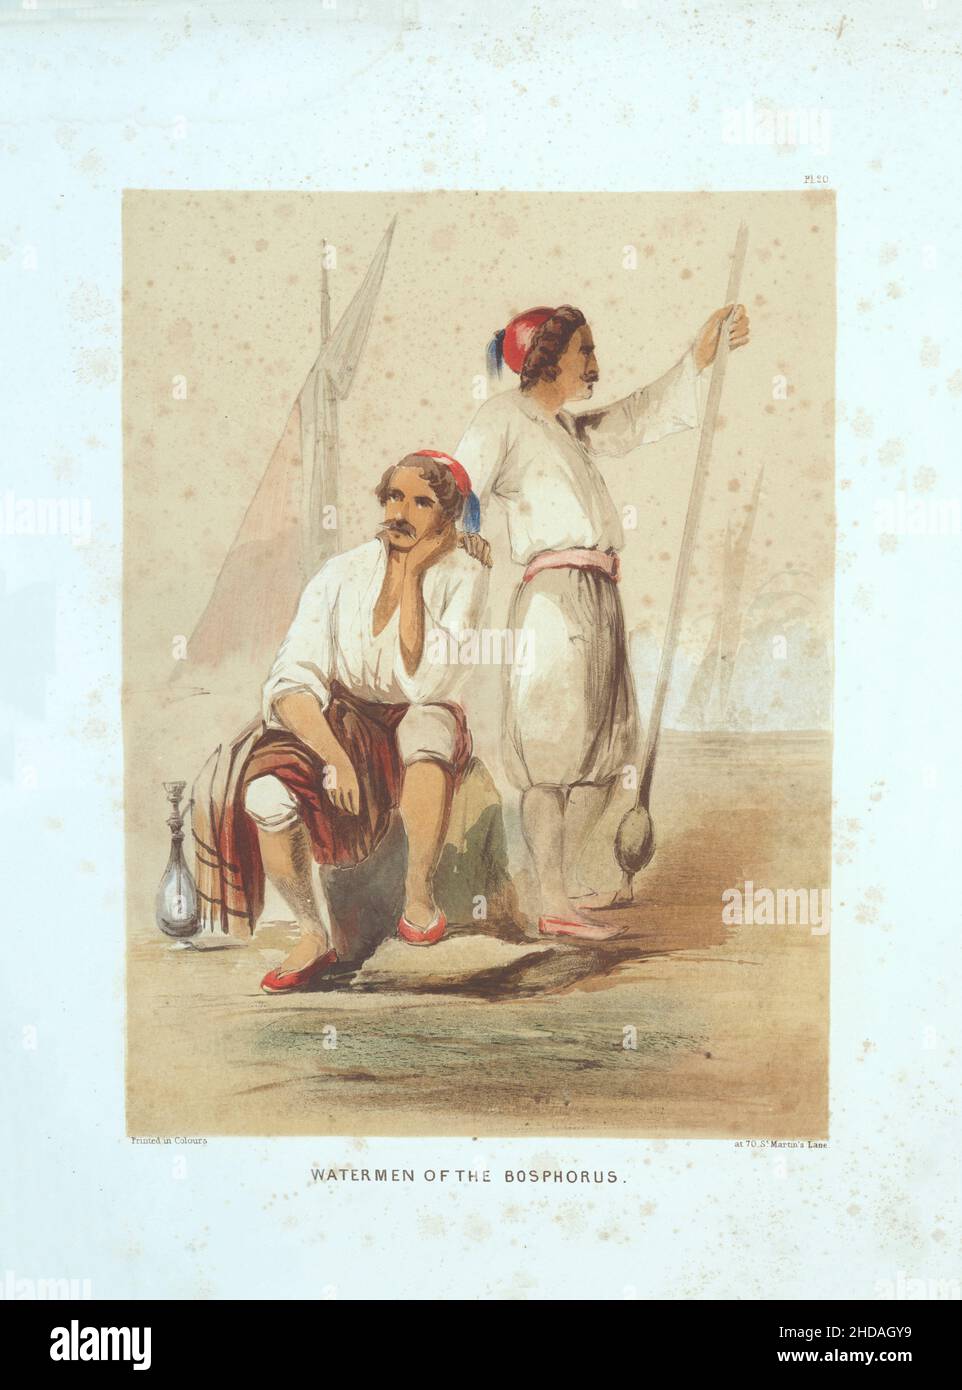 Litografia vintage a colori dell'Impero Ottomano: Cargees, o Watermen del Bosforo, Costantinopoli 1854, di Forbes Mac Bean (artista) e Justin Sutclif Foto Stock